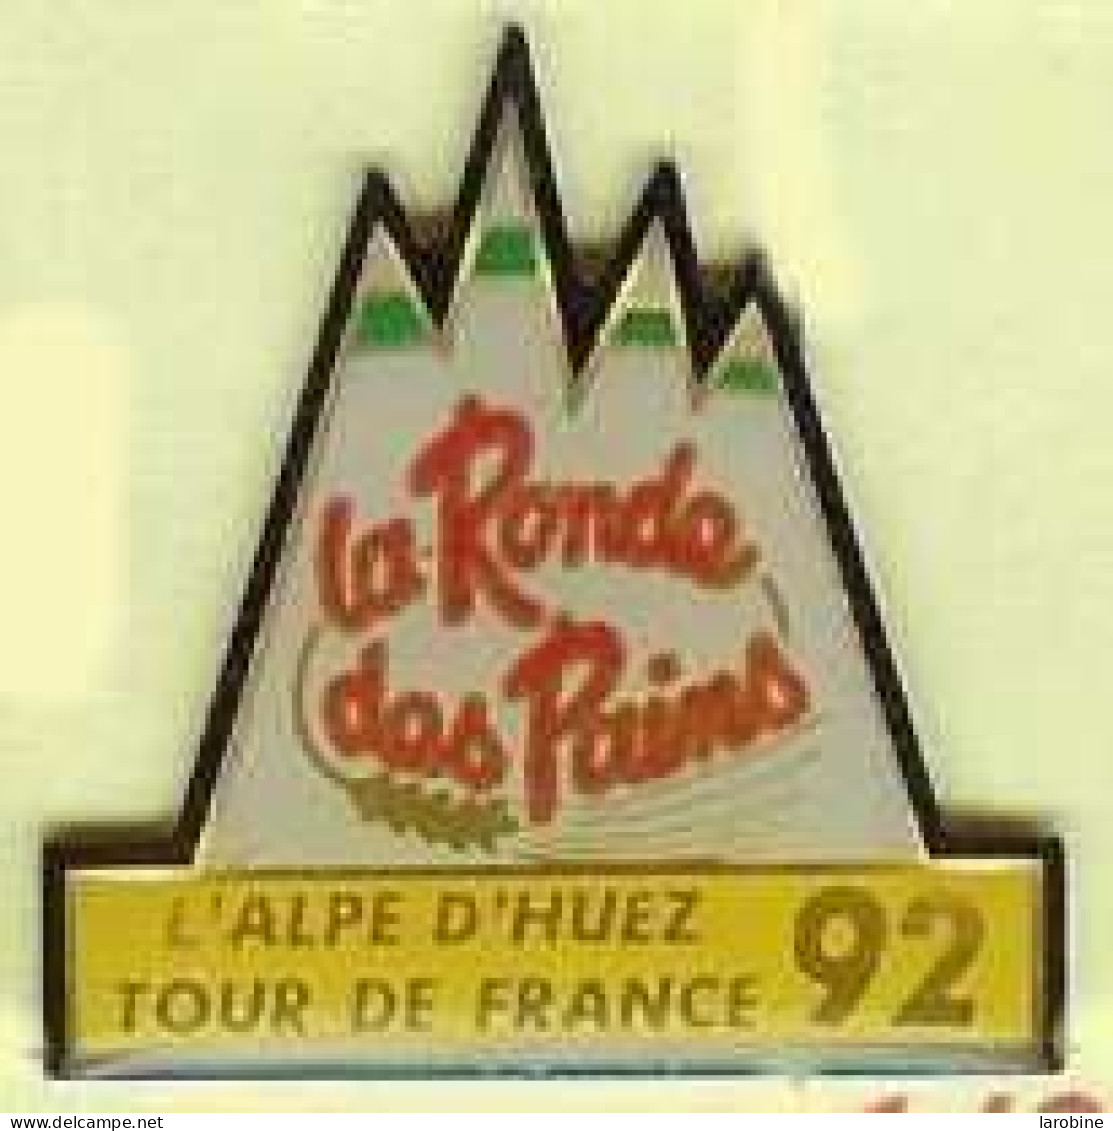 @@ Vélo Cycle Cycliste Tour De France L' Alpe D'Huez 1992 La Ronde Des Pains @@ve82b - Radsport